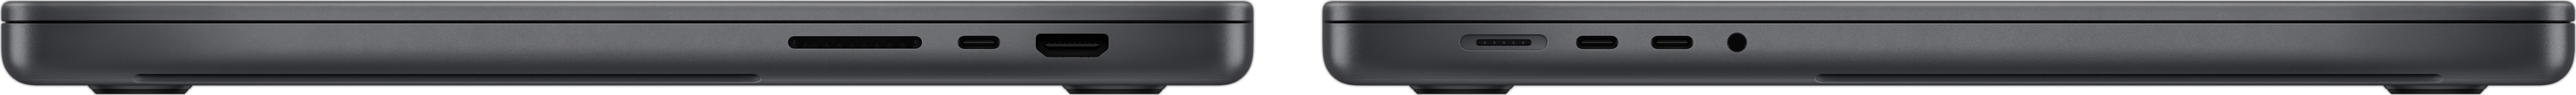 MacBook Pro sedd från sidan med SDXC-kortplats, tre Thunderbolt 4-portar, HDM-port, MagSafe 3-laddningsport och hörlursuttag.